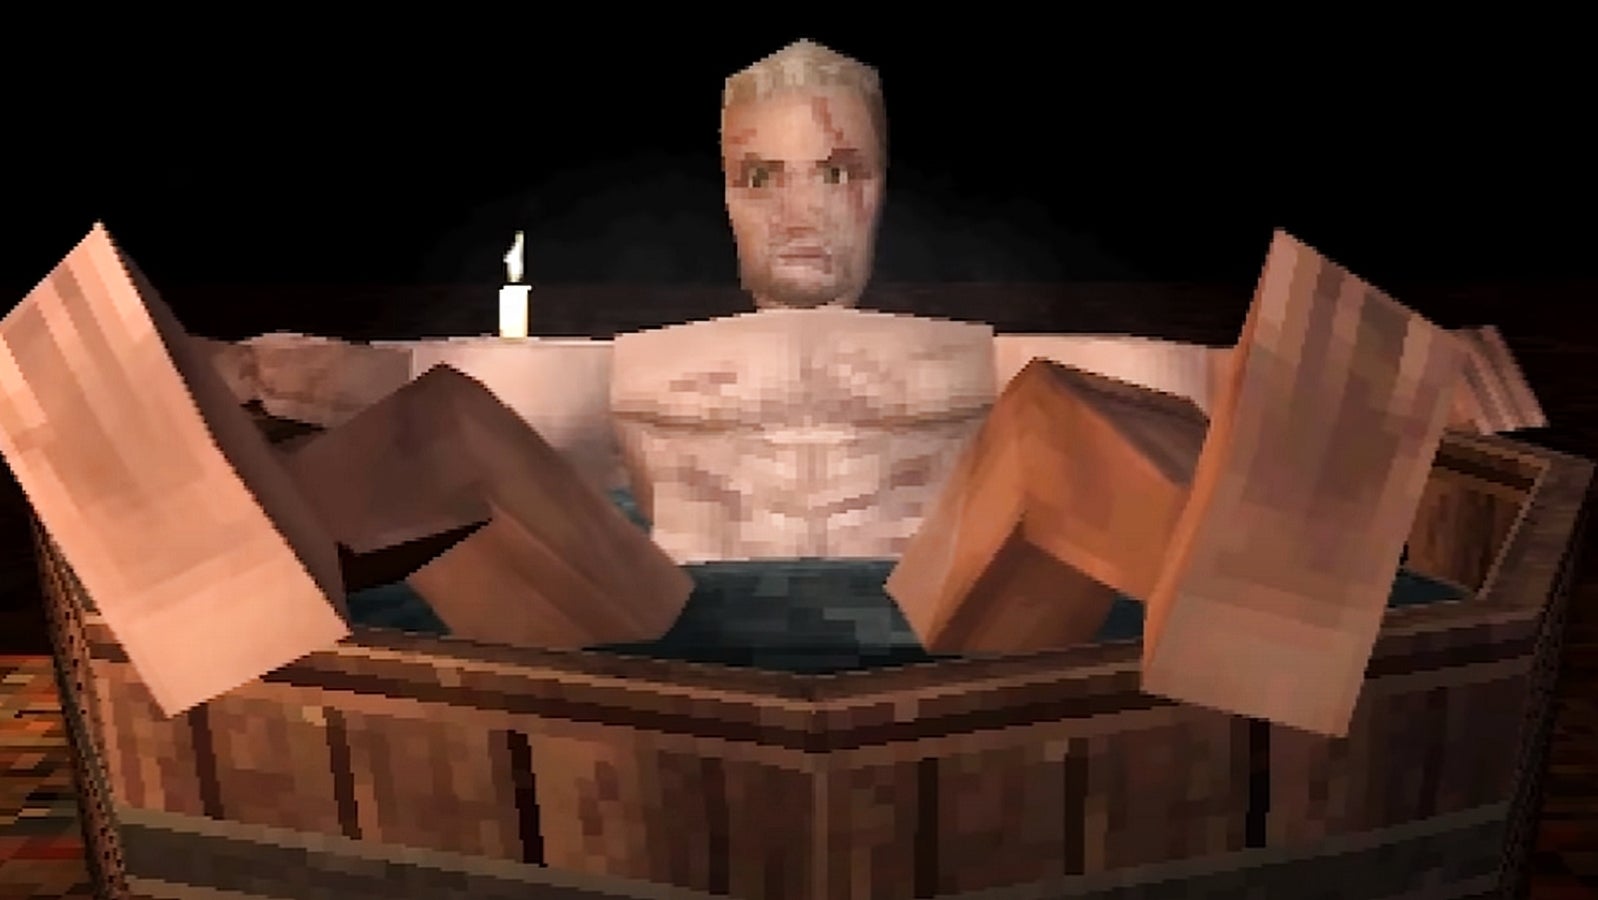 Bilder zu So witzig würde Witcher 3 auf der PS1 aussehen - die Badeszene wird zur Pixelparty!